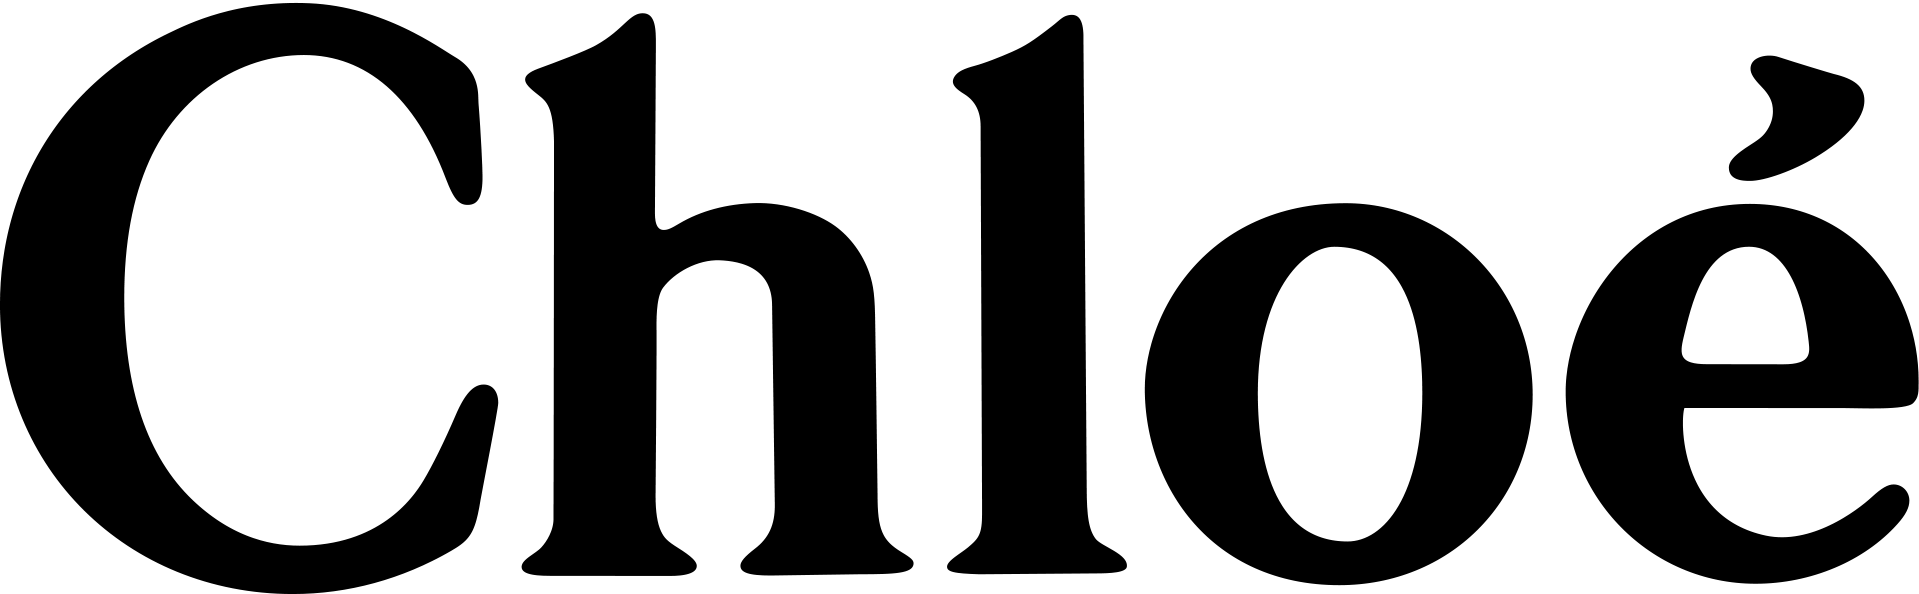 Logo Chloé_black